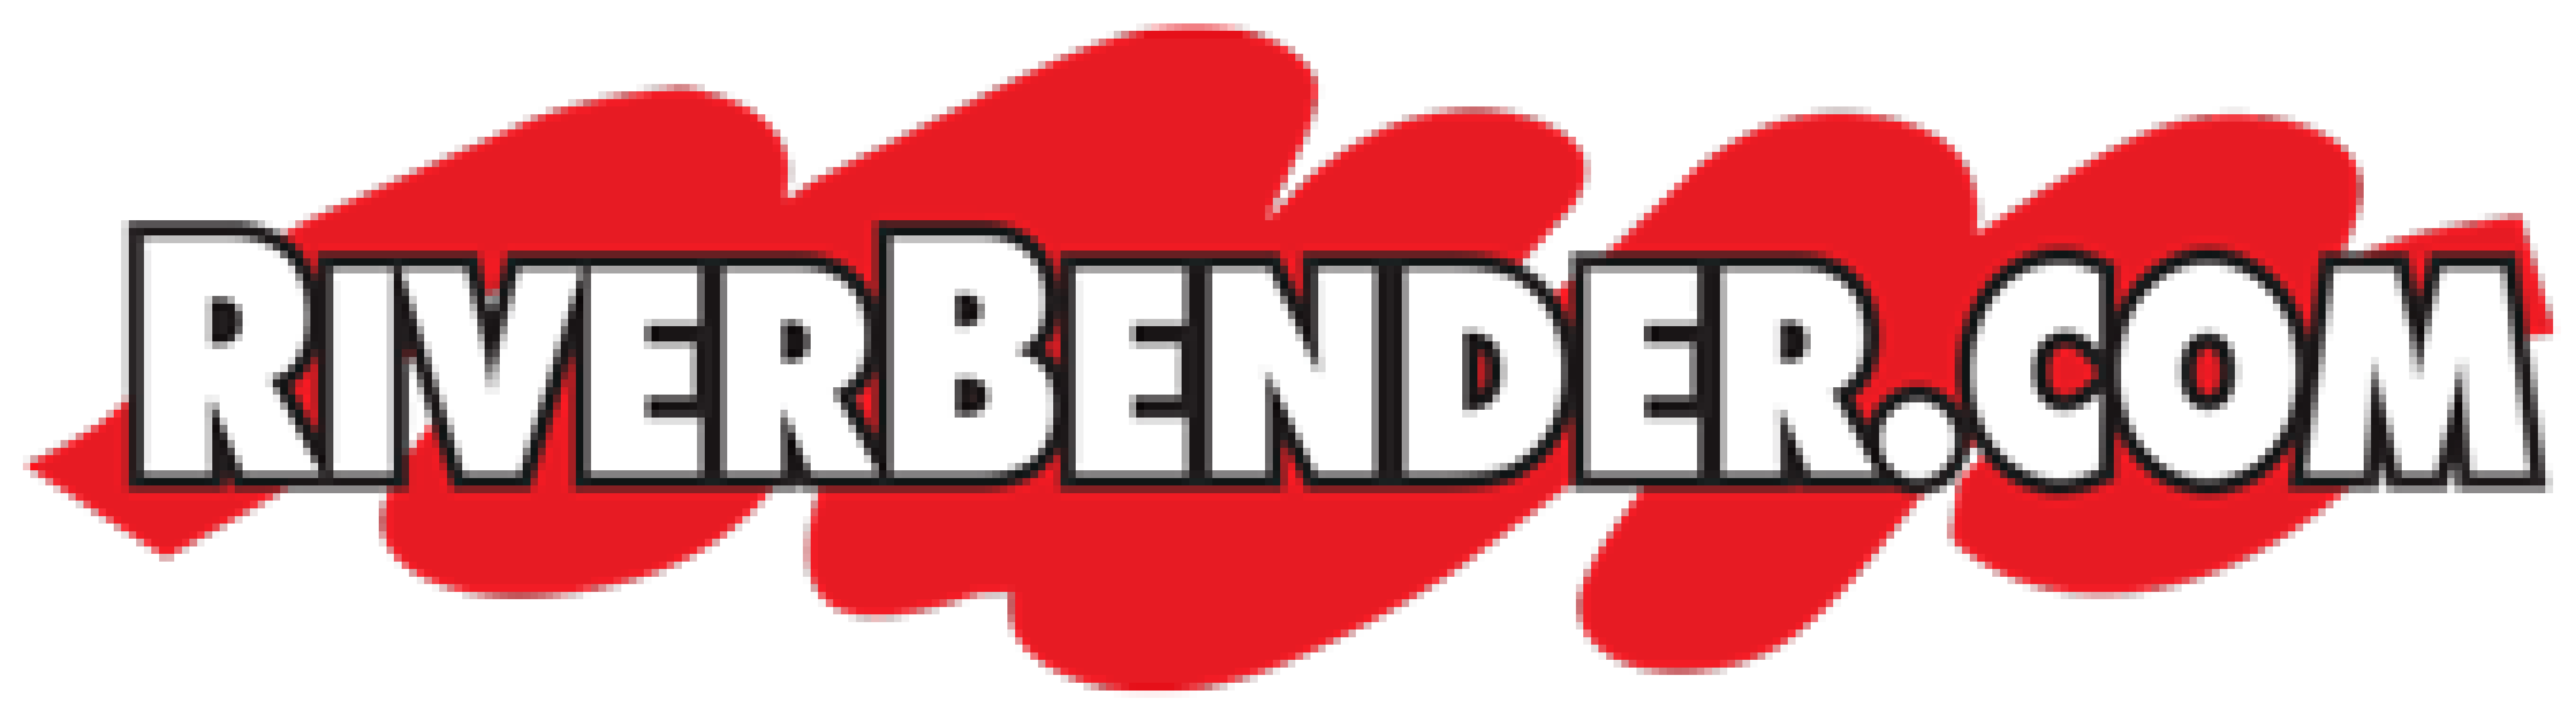 Riverbender logo